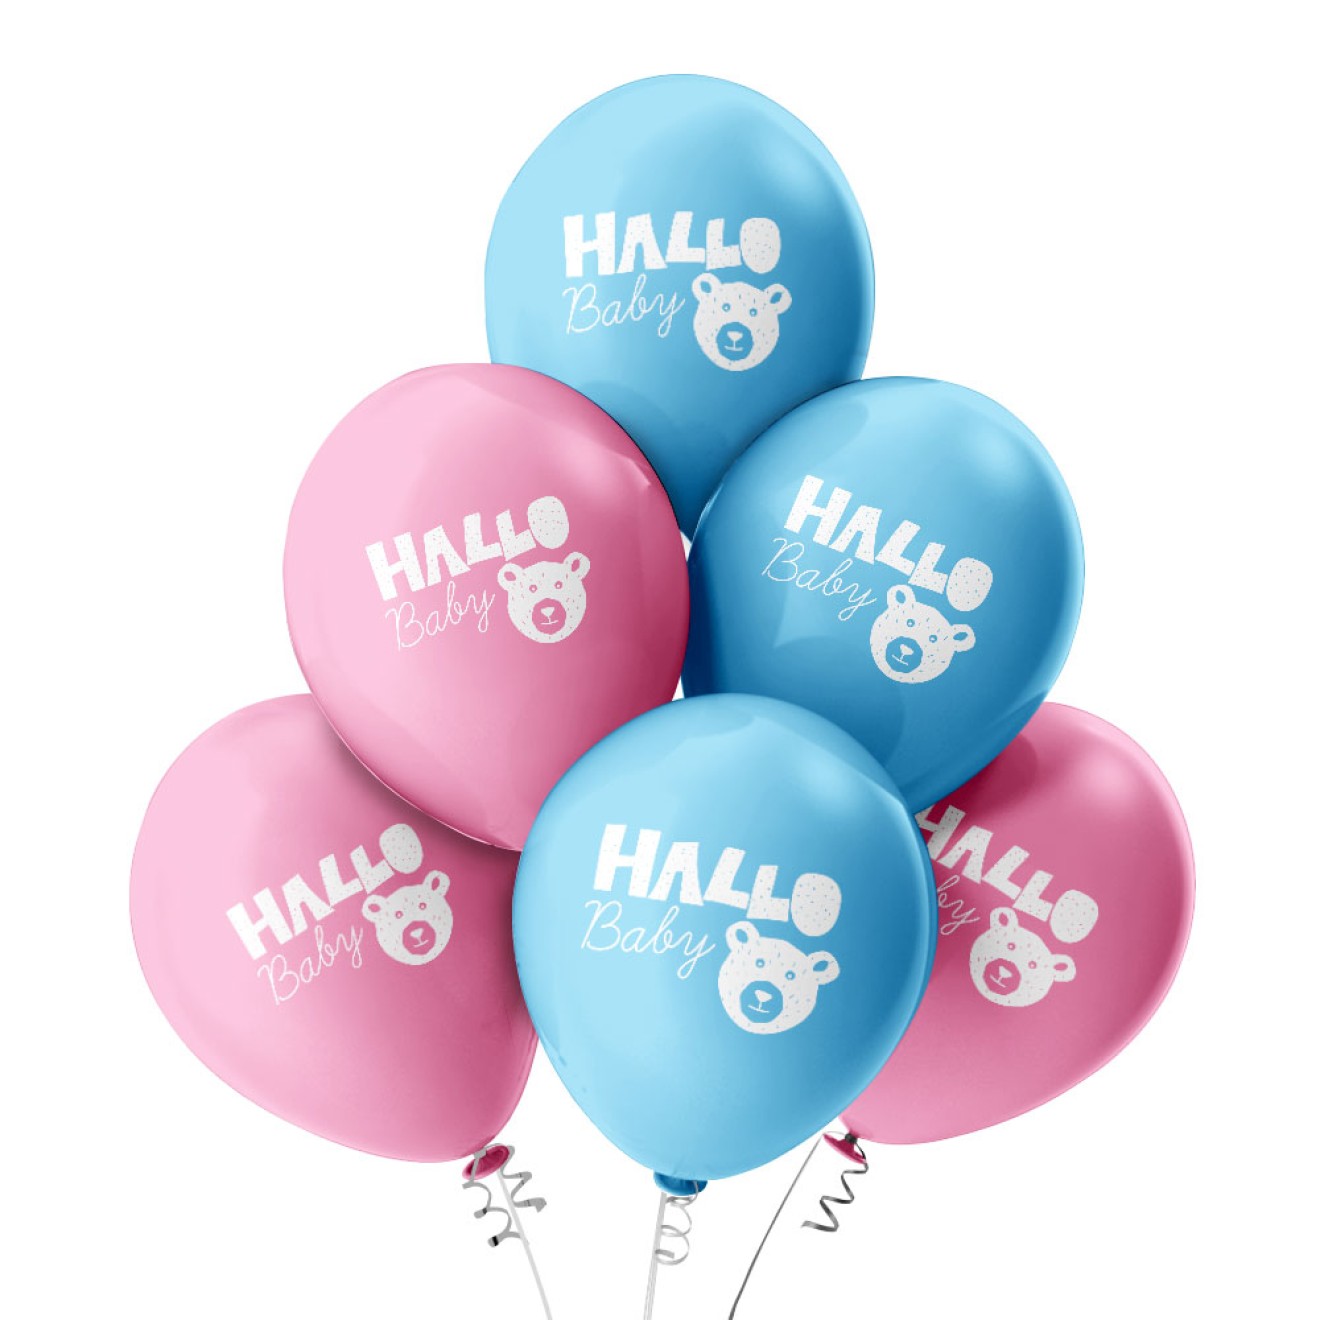 6 Luftballons Hallo Baby - Freie Farbauswahl